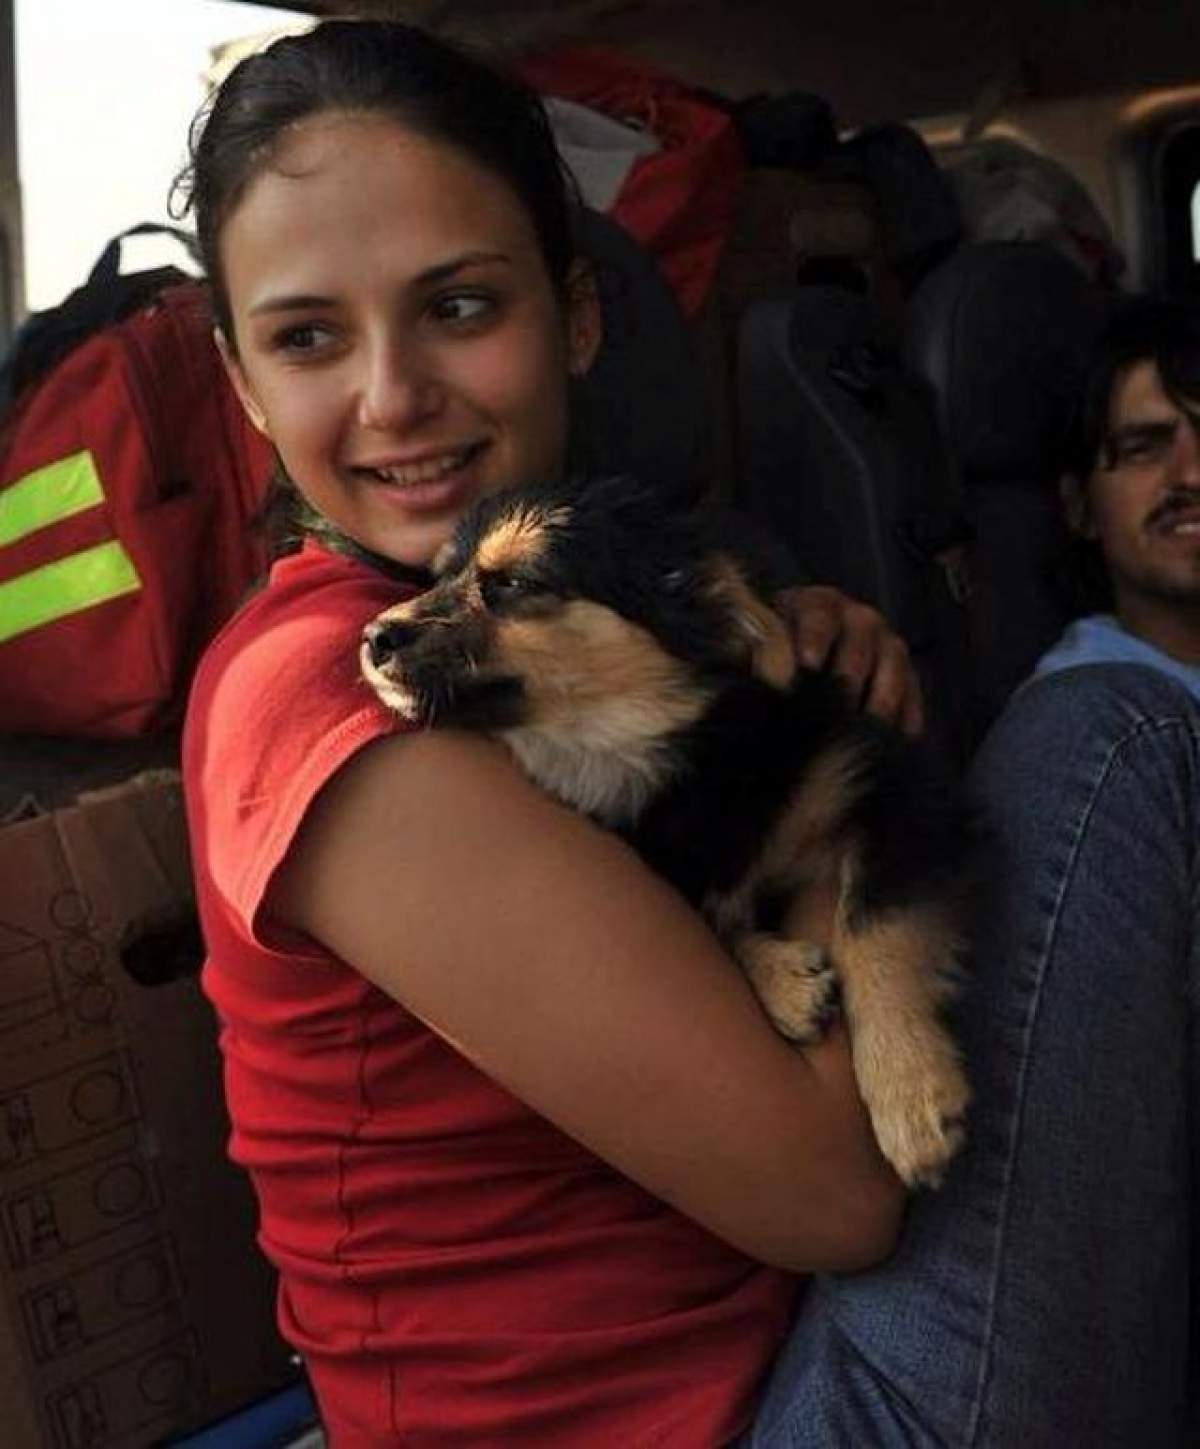 Povestea emoţionantă a Luanei: Visa să aibă propriul cabinet veterinar, dar a murit cu o zi înainte să împlinească 27 de ani